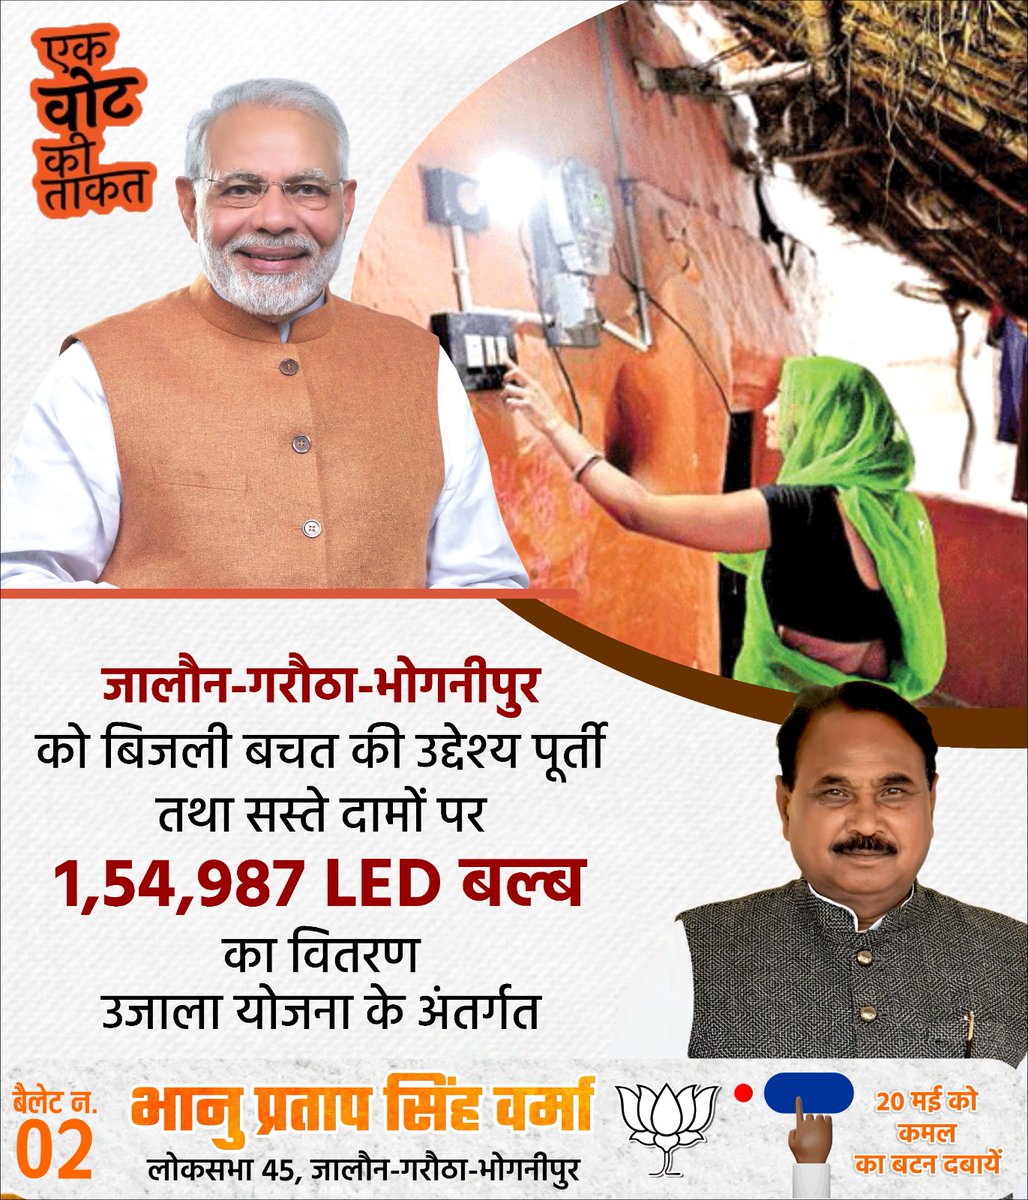 उजाला योजना के अंतर्गत, जालौन-गरौठा-भोगनीपुर में 1,54,987 LED बल्ब उपलब्ध हुए सस्ते दामों में। आइए, हम सब मिलकर समृद्धि की दिशा में एक कदम आगे बढ़ाएं। ये है आपके एक वोट की ताकत! जालौन-गरौठा-भोगनीपुर सफल व उन्नत। #LokSabhaElections2024    #ModiKaParivar #ModiKiGuarantee